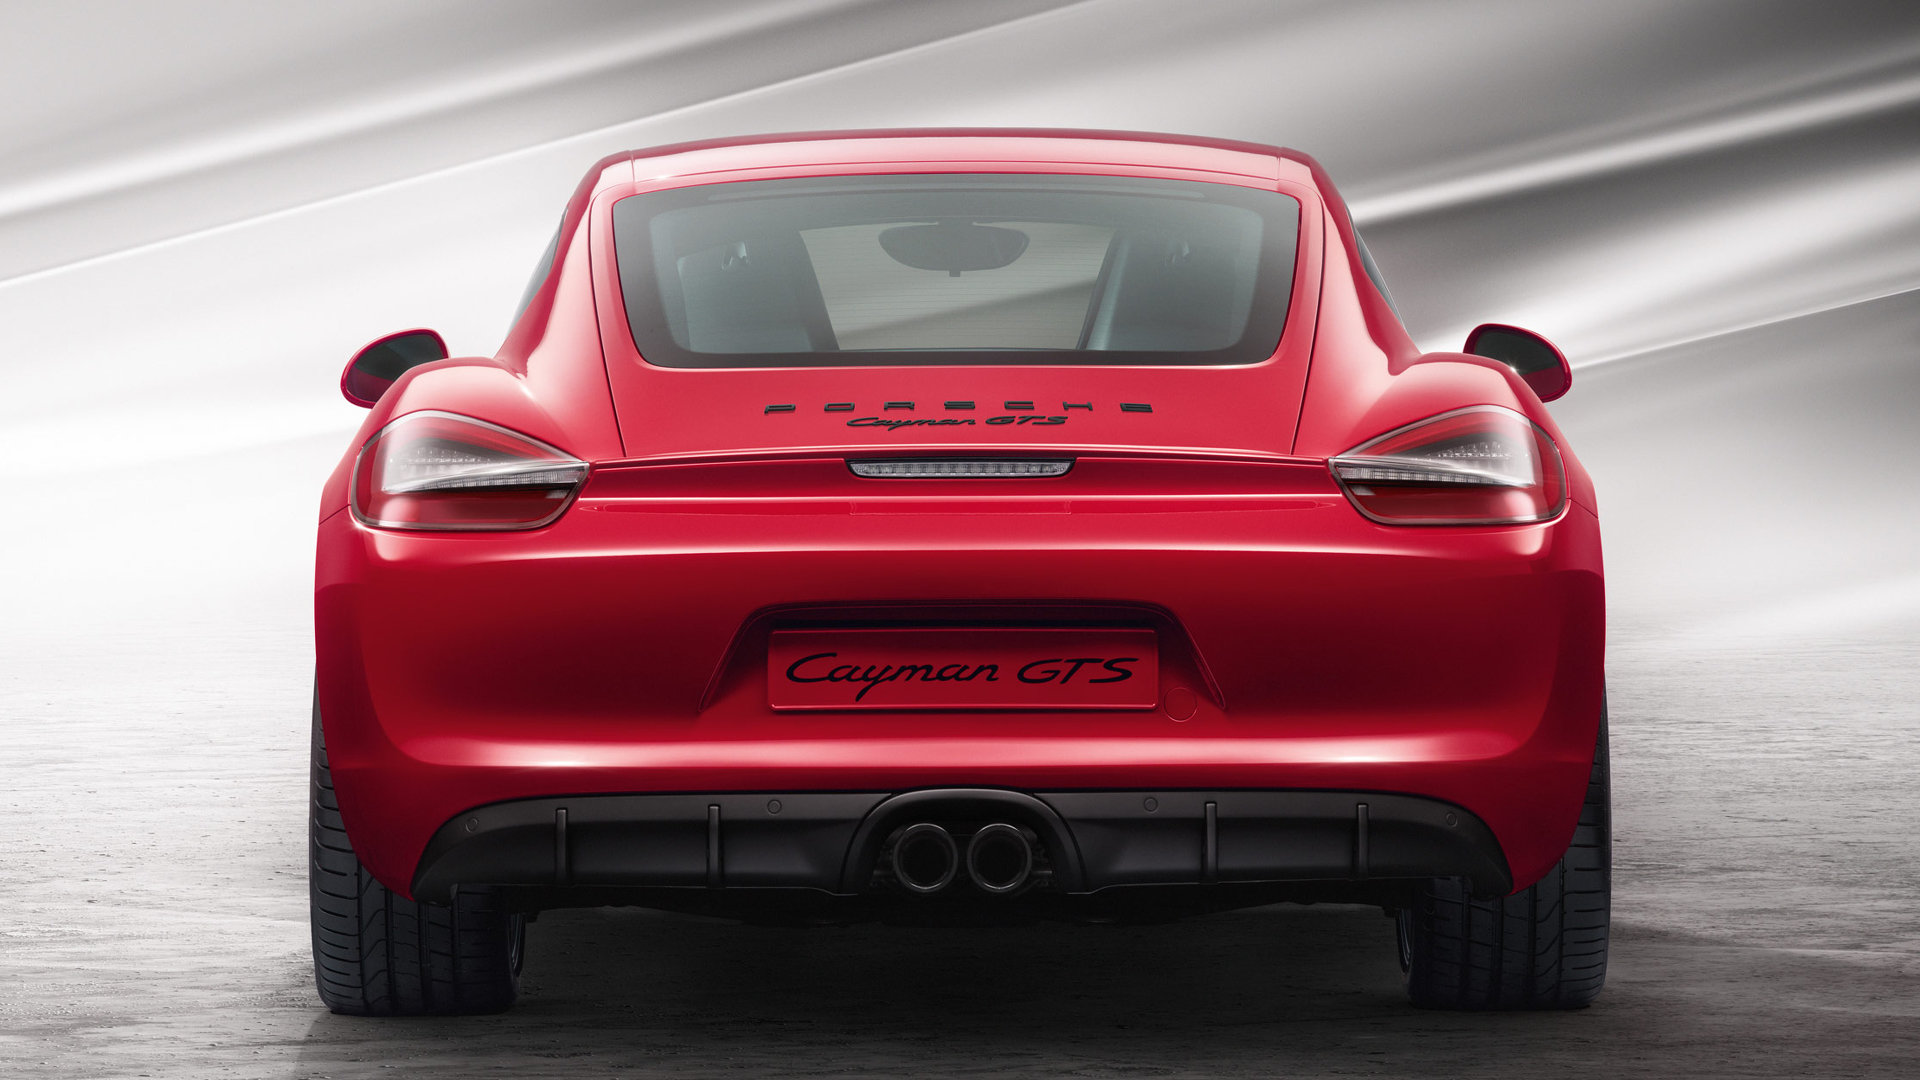 Best Porsche Cayman GTS wallpaper ID:380148 for High Resolution full hd 1080p desktop